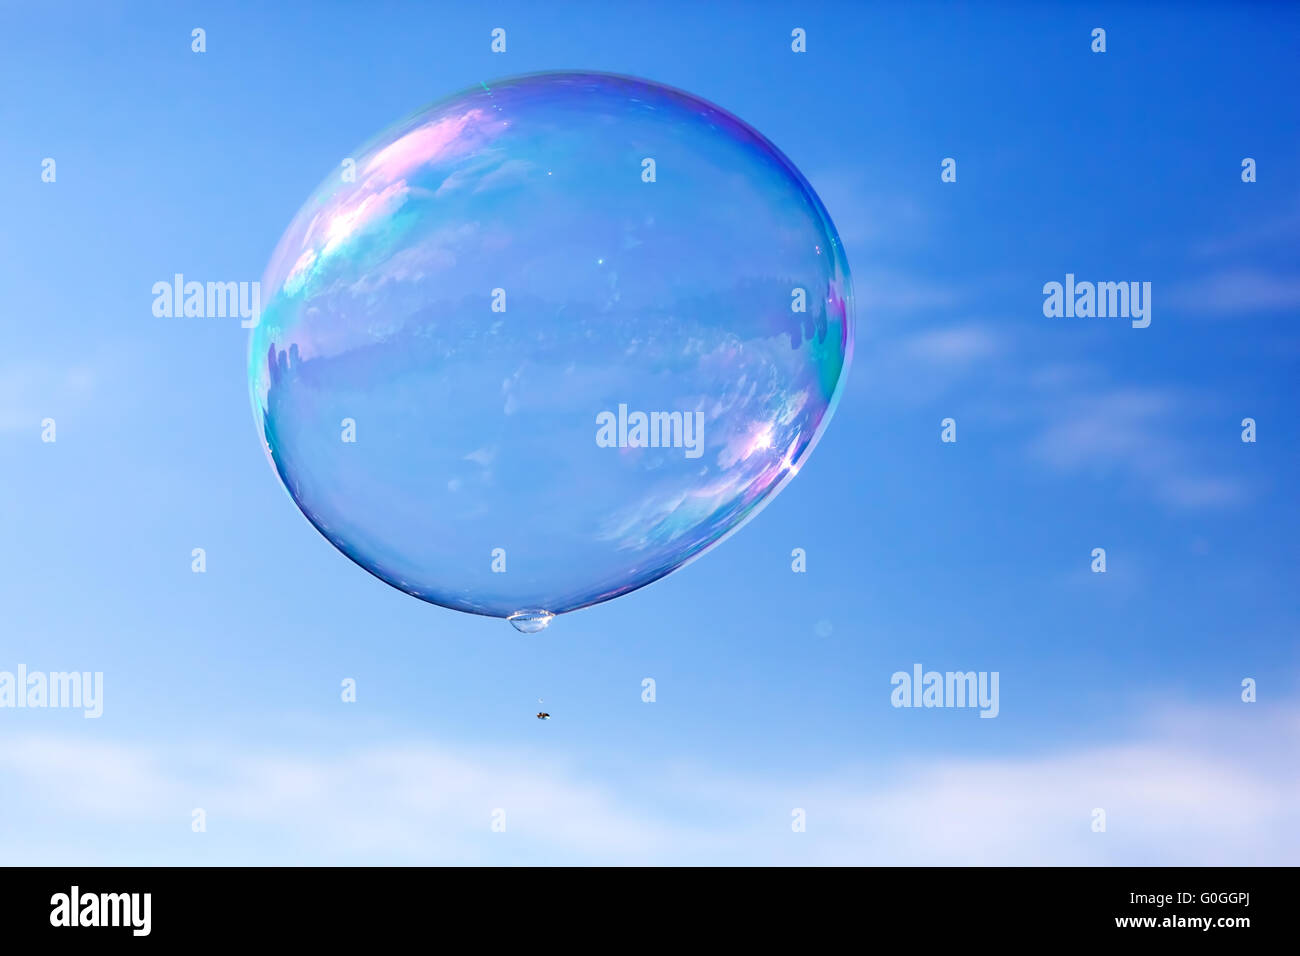 Eine saubere Seifenblasen fliegen in der Luft, blauer Himmel. Stockfoto